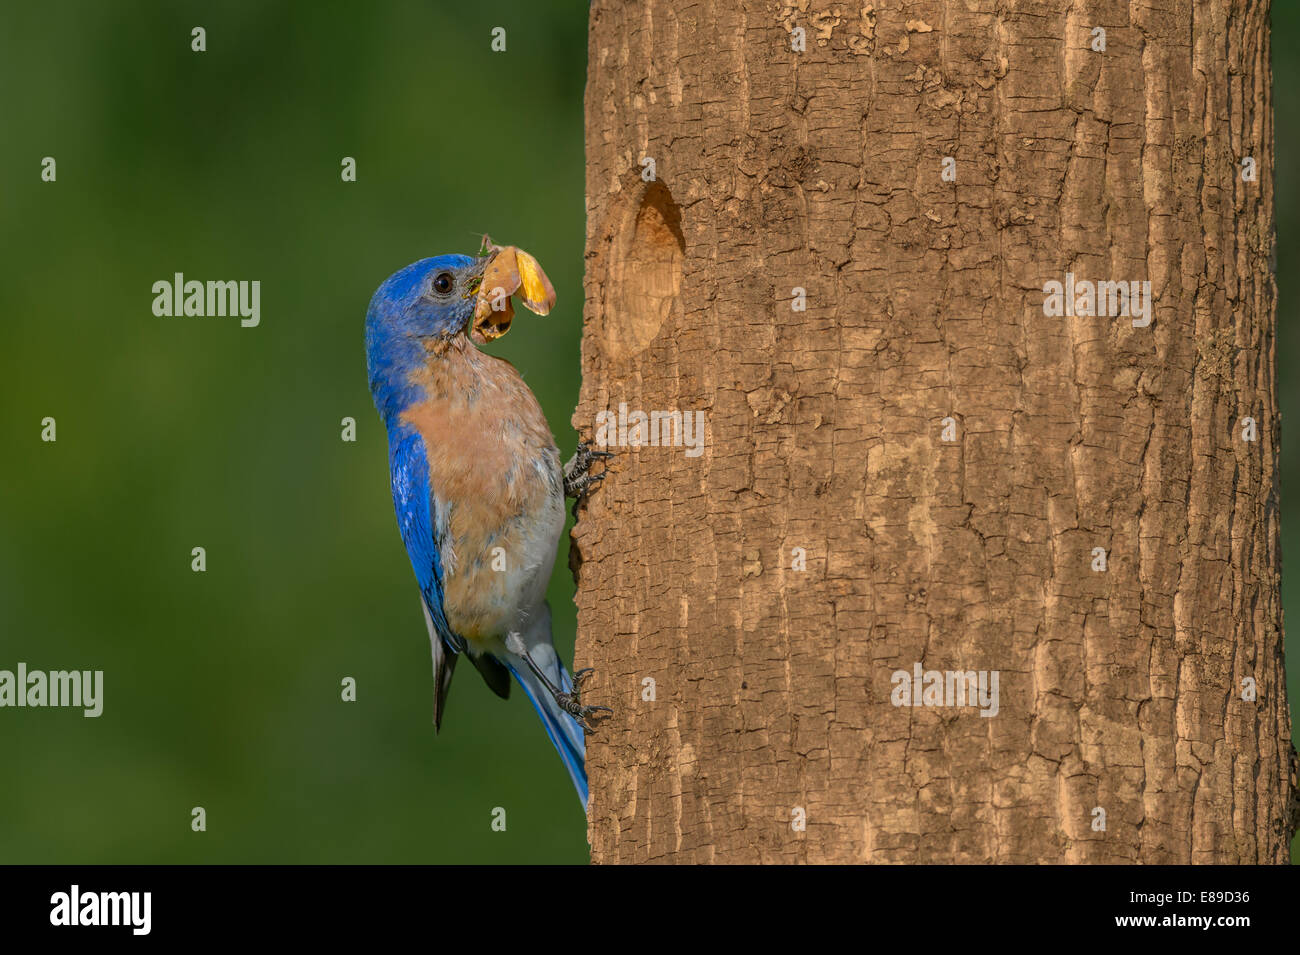 Männliche Eastern Bluebird (Sialia sialis) mit Skipper Schmetterling am Baum Nest gegen eine saubere Grün aus Fokus Hintergrund. Diese östliche Bluebird beschäftigt dieser Frühling gebracht, alle Arten von verschiedenen Insekten seine Küken im Nest zu füttern. Stockfoto